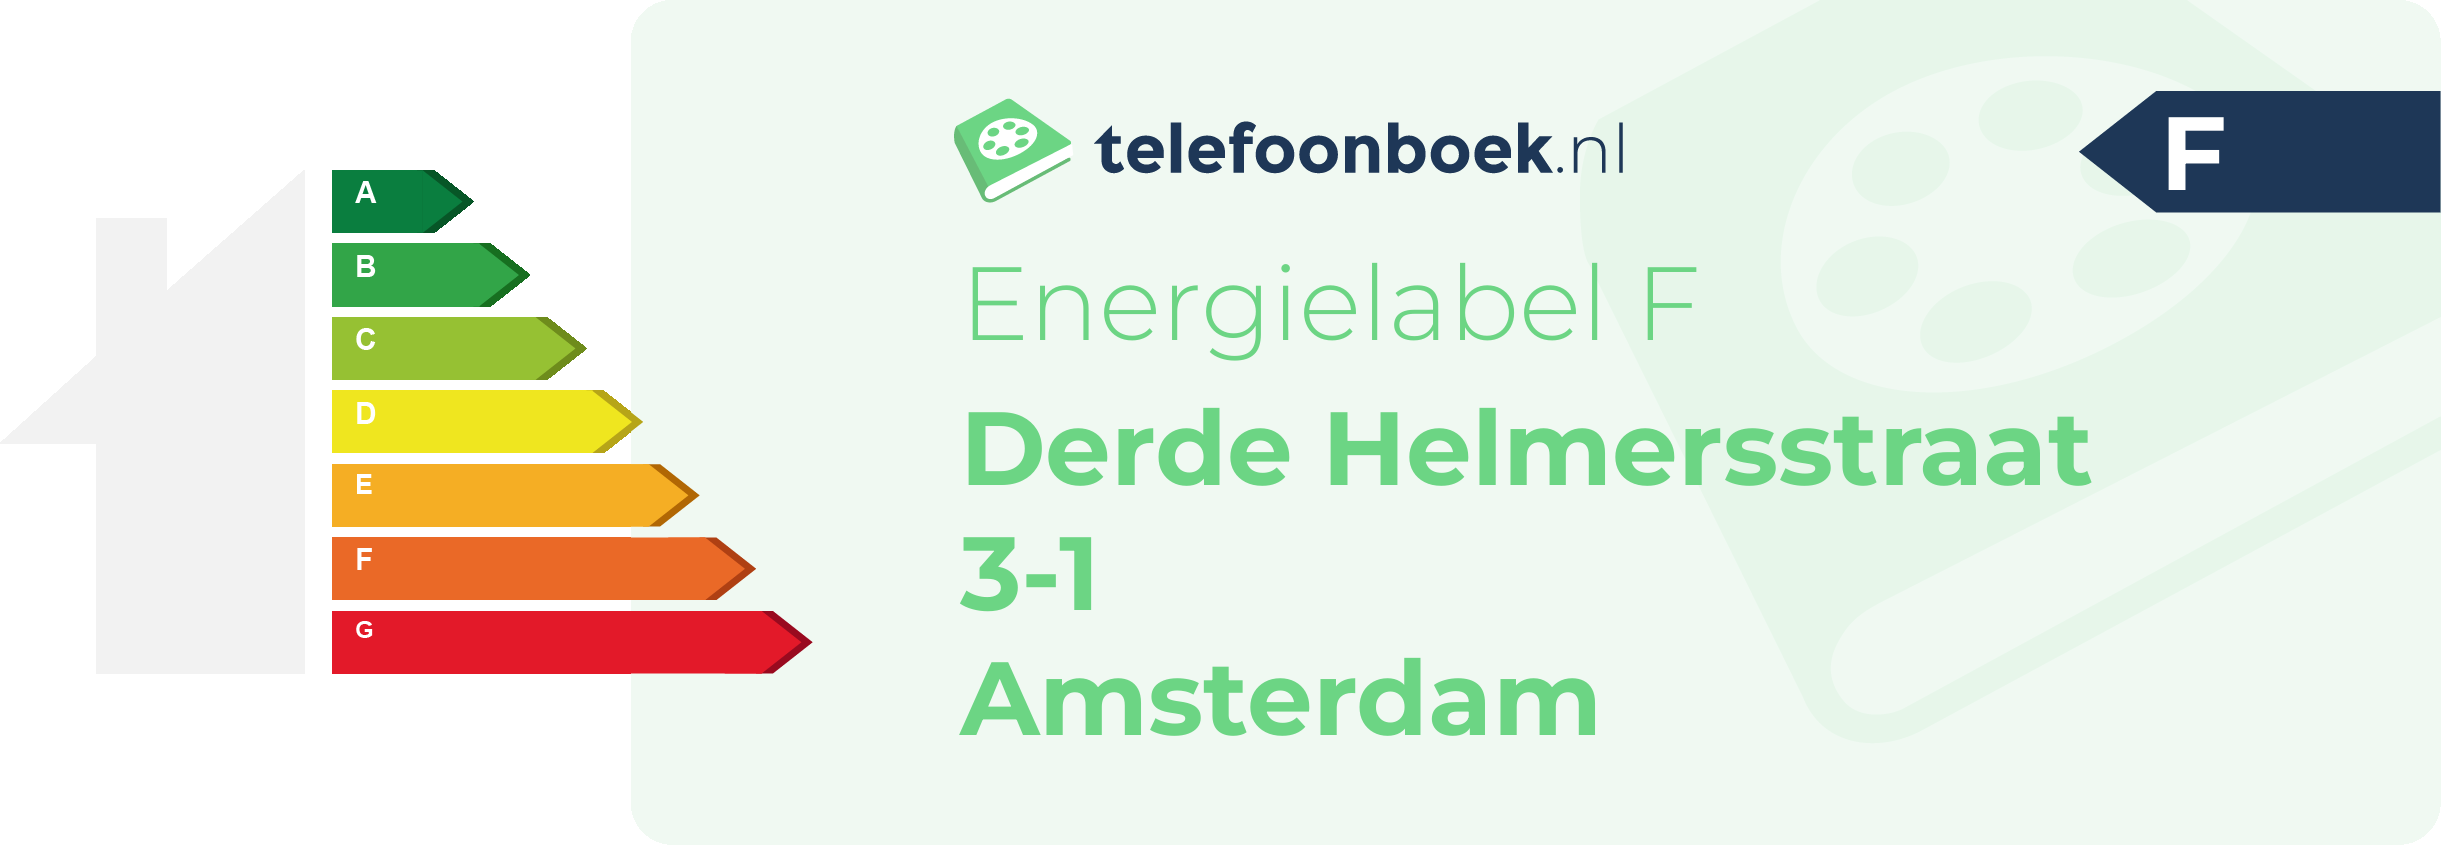 Energielabel Derde Helmersstraat 3-1 Amsterdam